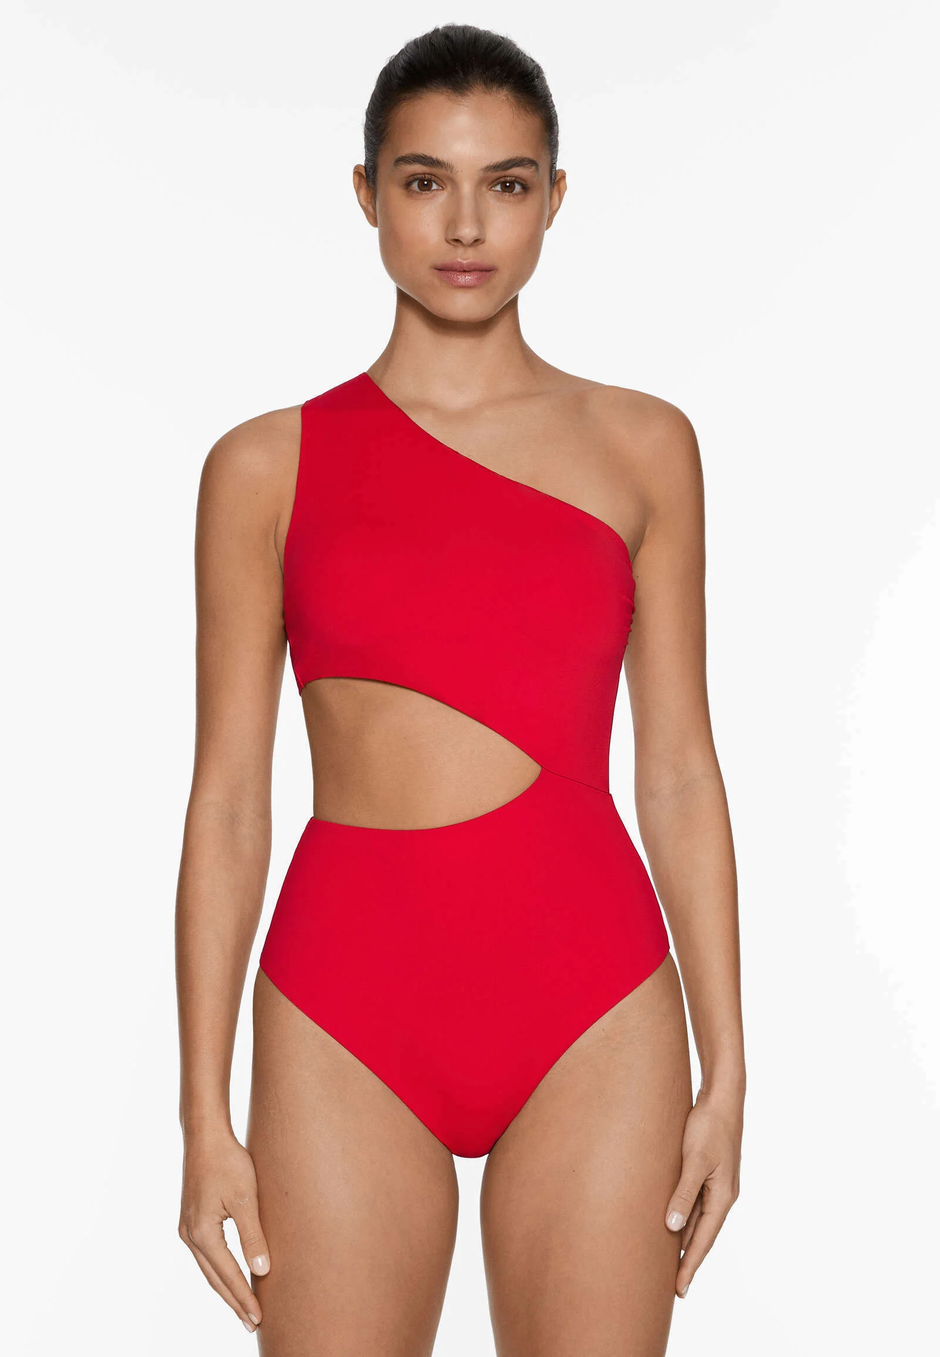 Foto: Zalando/ Oysho, jednodijelni crveni kupaći kostim (45,99 eura) | Autor: 